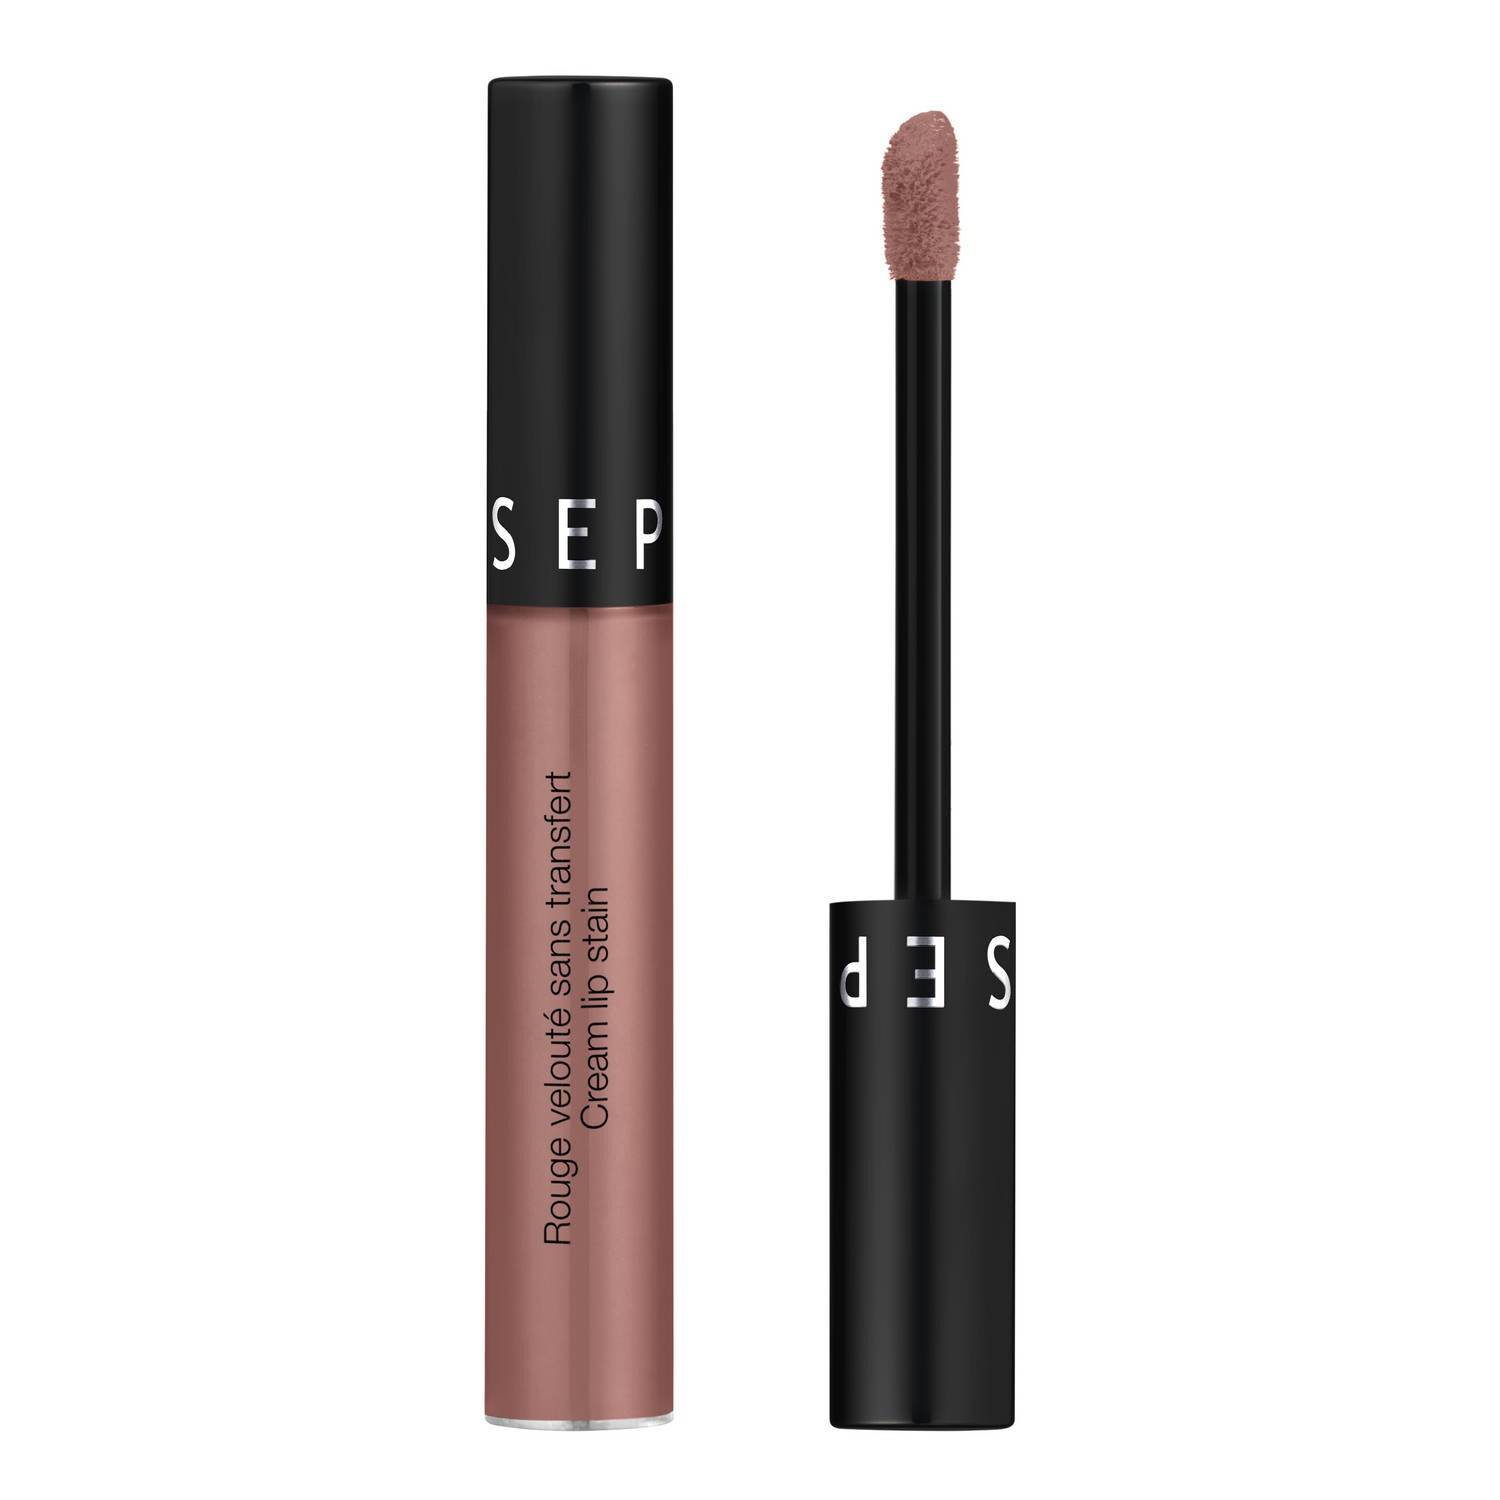 Sephora Collection Cream Lip Stain Matte Liquid Lipstick 5Ml 23. Copper Blush